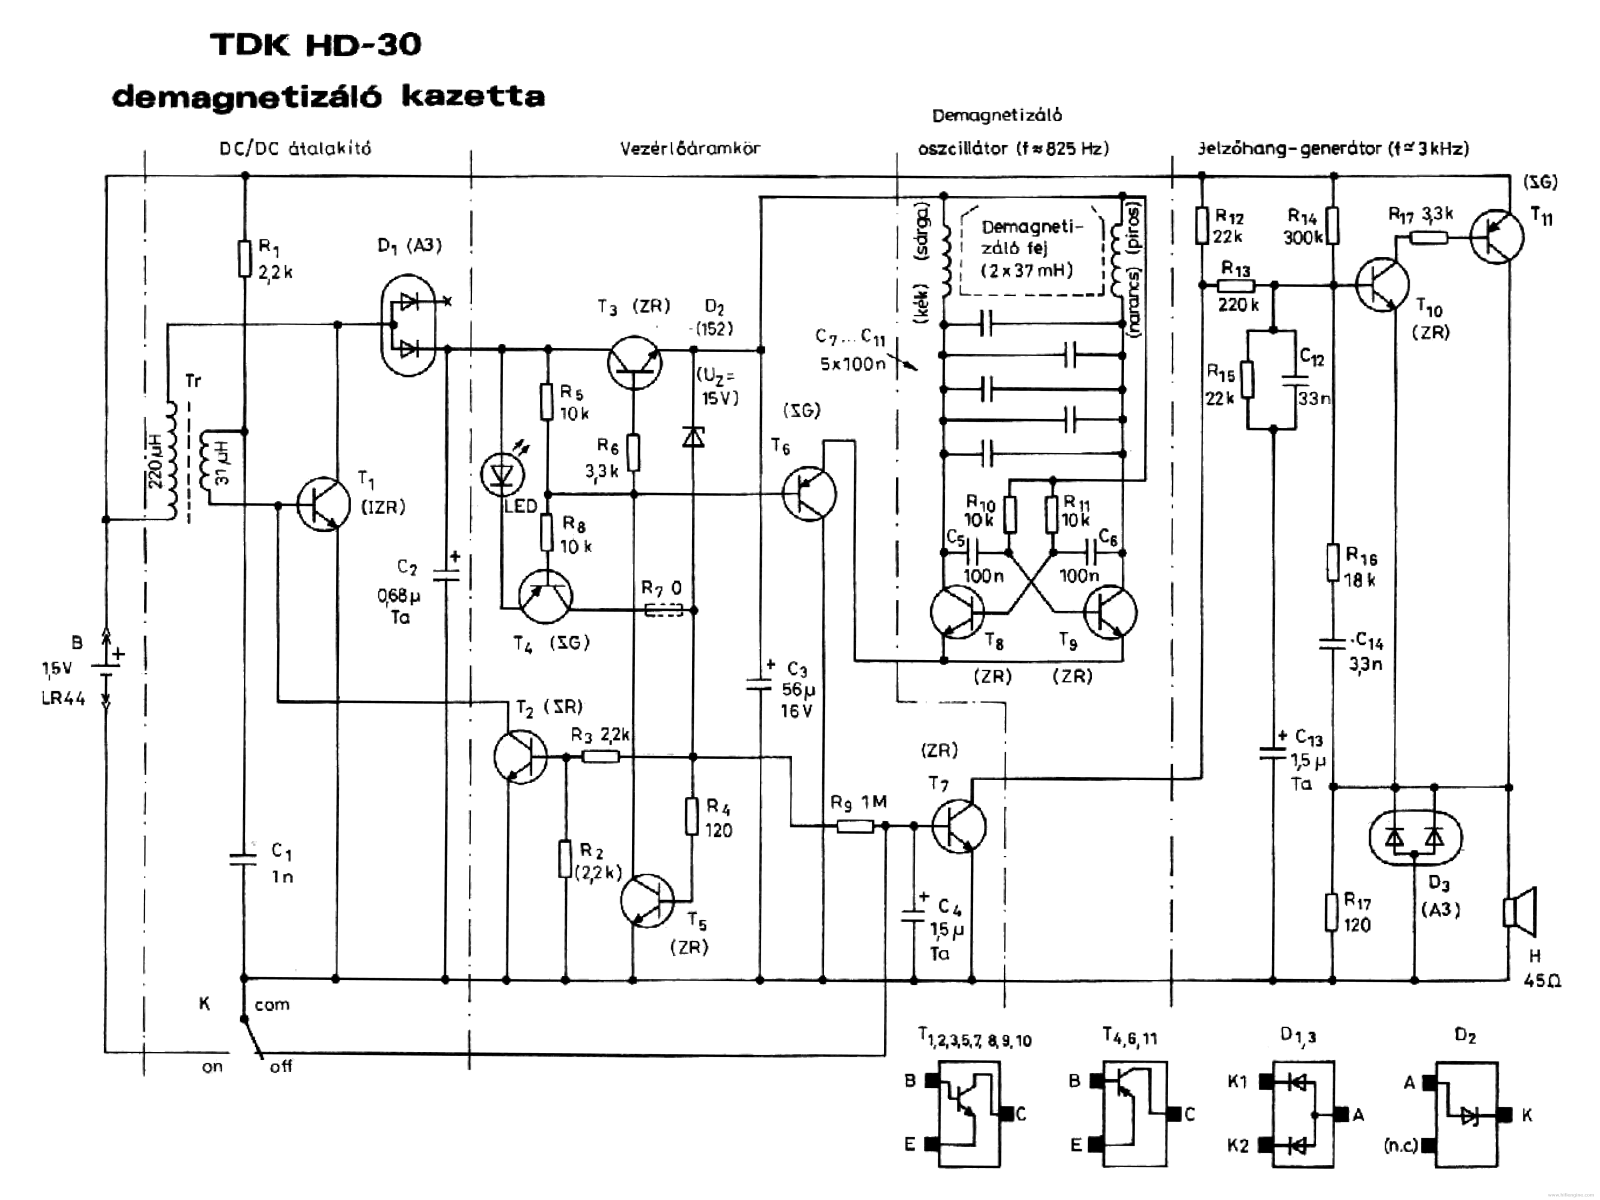 TDK hd-30 Schematics